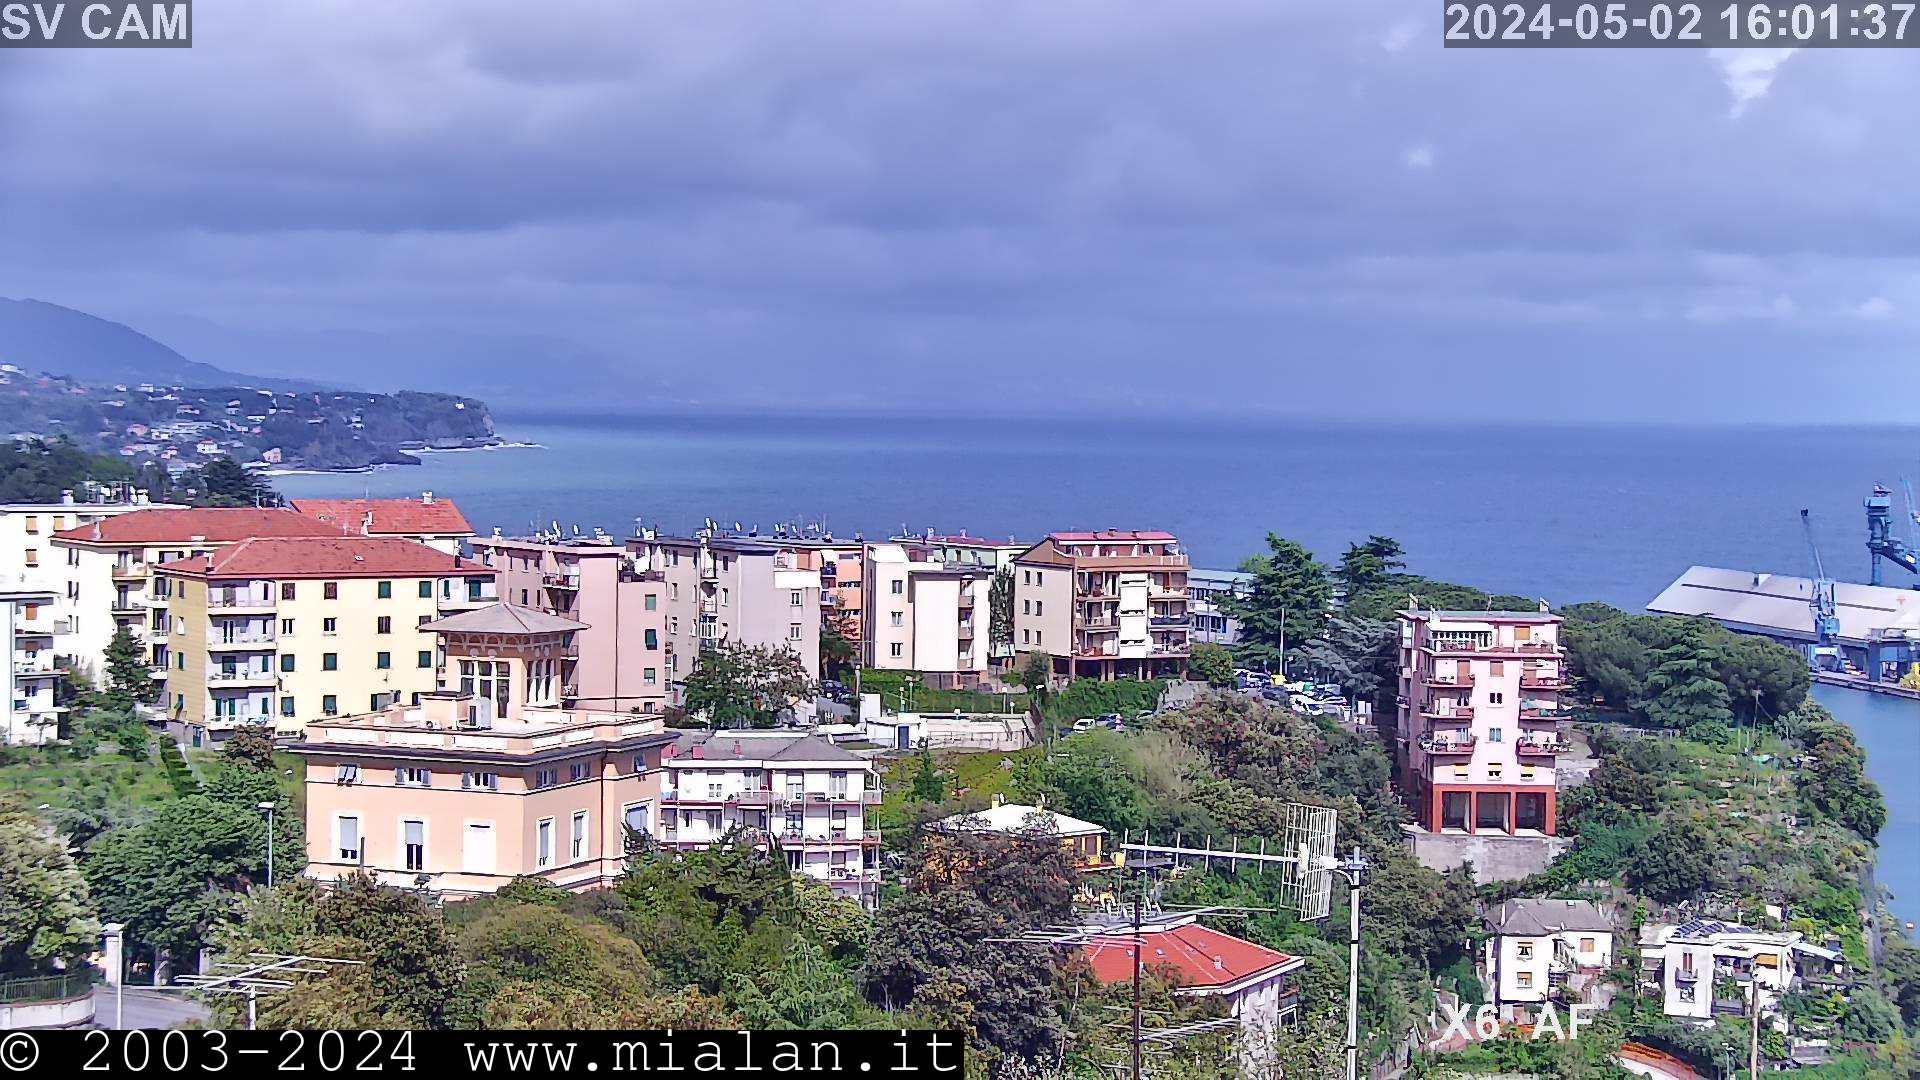 Webcam Liguria: Savona